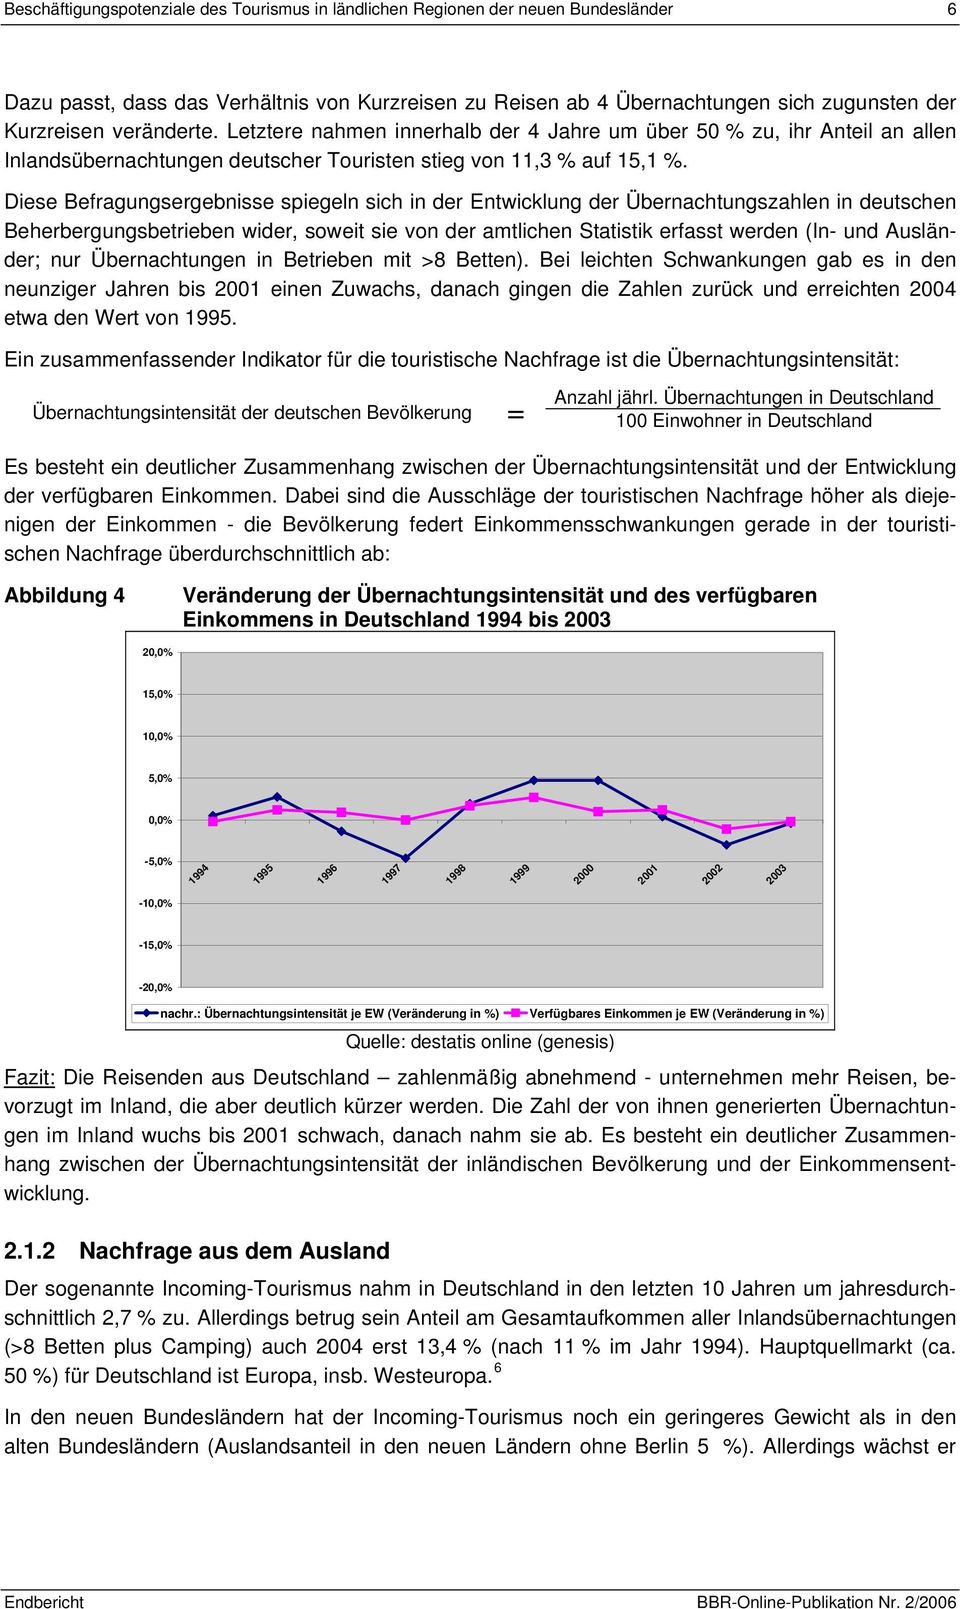 Diese Befragungsergebnisse spiegeln sich in der Entwicklung der Übernachtungszahlen in deutschen Beherbergungsbetrieben wider, soweit sie von der amtlichen Statistik erfasst werden (In- und